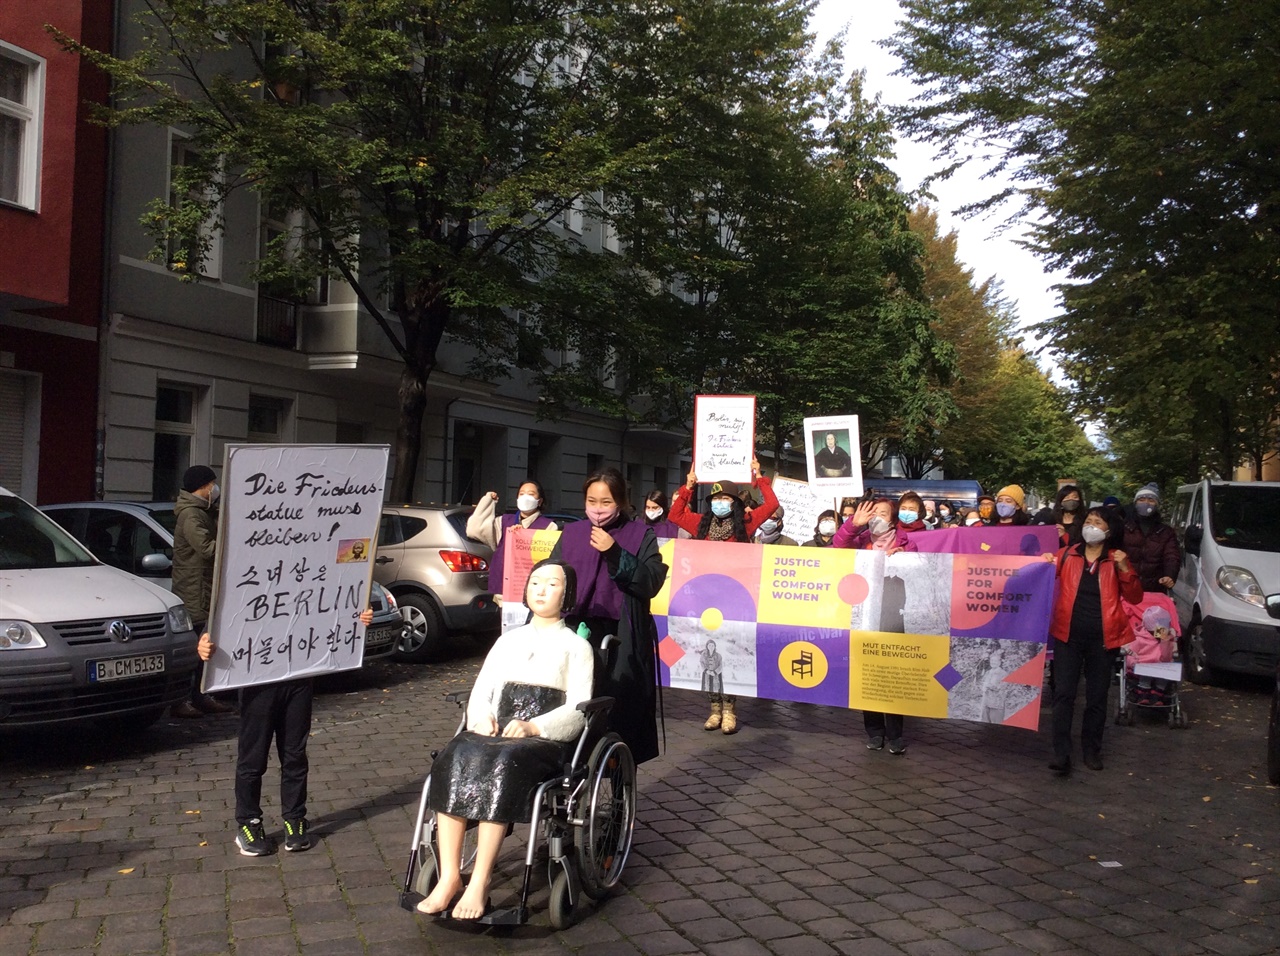  13일 독일 베를린에서 열린 평화의 소녀상 철거명령 항의 집회. 참가자들은 베를린 평화의 소녀상에서 미테구청까지 행진했다. 현지 언론에 따르면, 이 집회엔 300여 명이 참가했다. 